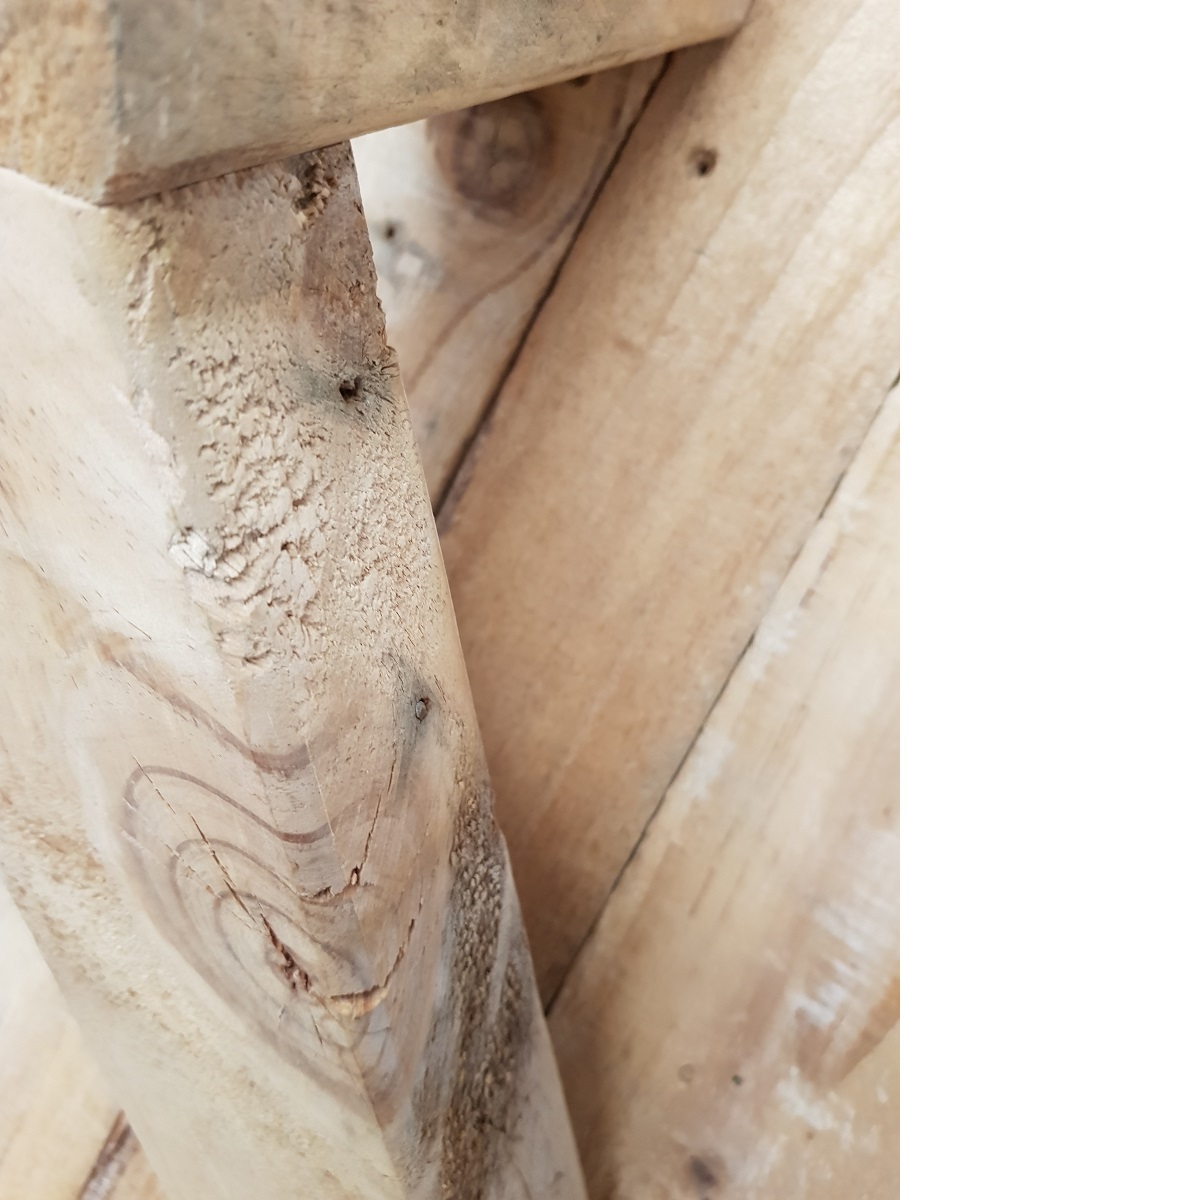 Houten wandversiering Woodout. Deze unieke prachtige houten 3D wandsculptuur is gemaakt van gerecyclede hout. De afgedankte balken zijn de eyecatcher van het geheel, mooi gedrapeerd over de planken welke eerder als vloer van een pallet dienden. Her en der is nog een in onmin geraakte spijker terug te vinden uit een voorgaand leven. Het geheel is samengebracht in een vurenhouten frame.

Op de balken zijn nog stukjes markering van hun voorgaande leven terug te vinden, wat een extra stukje authenticiteit toevoegt. De balken zijn bevestigd op een vloertje van oude palletplanken, welke nog de sporen in zich hebben van hun vorige bestaan. Spijkergaatjes en zelfs nog een aantal oude afgezaagde spijkers prijken als oude wachters in het gedroogde hout.

De compositie is afgemaakt met een vurenhouten rand, bijna om aan te geven dat het verleden daarbinnen dient te blijven. Het is een uniek kunstwerk, handgemaakt en er is er geen één gelijk. Het hout is tot rust gekomen, ondanks de sporen van een werkbaar leven. Een prachtige wanddecoratie om aan de muur te hangen.